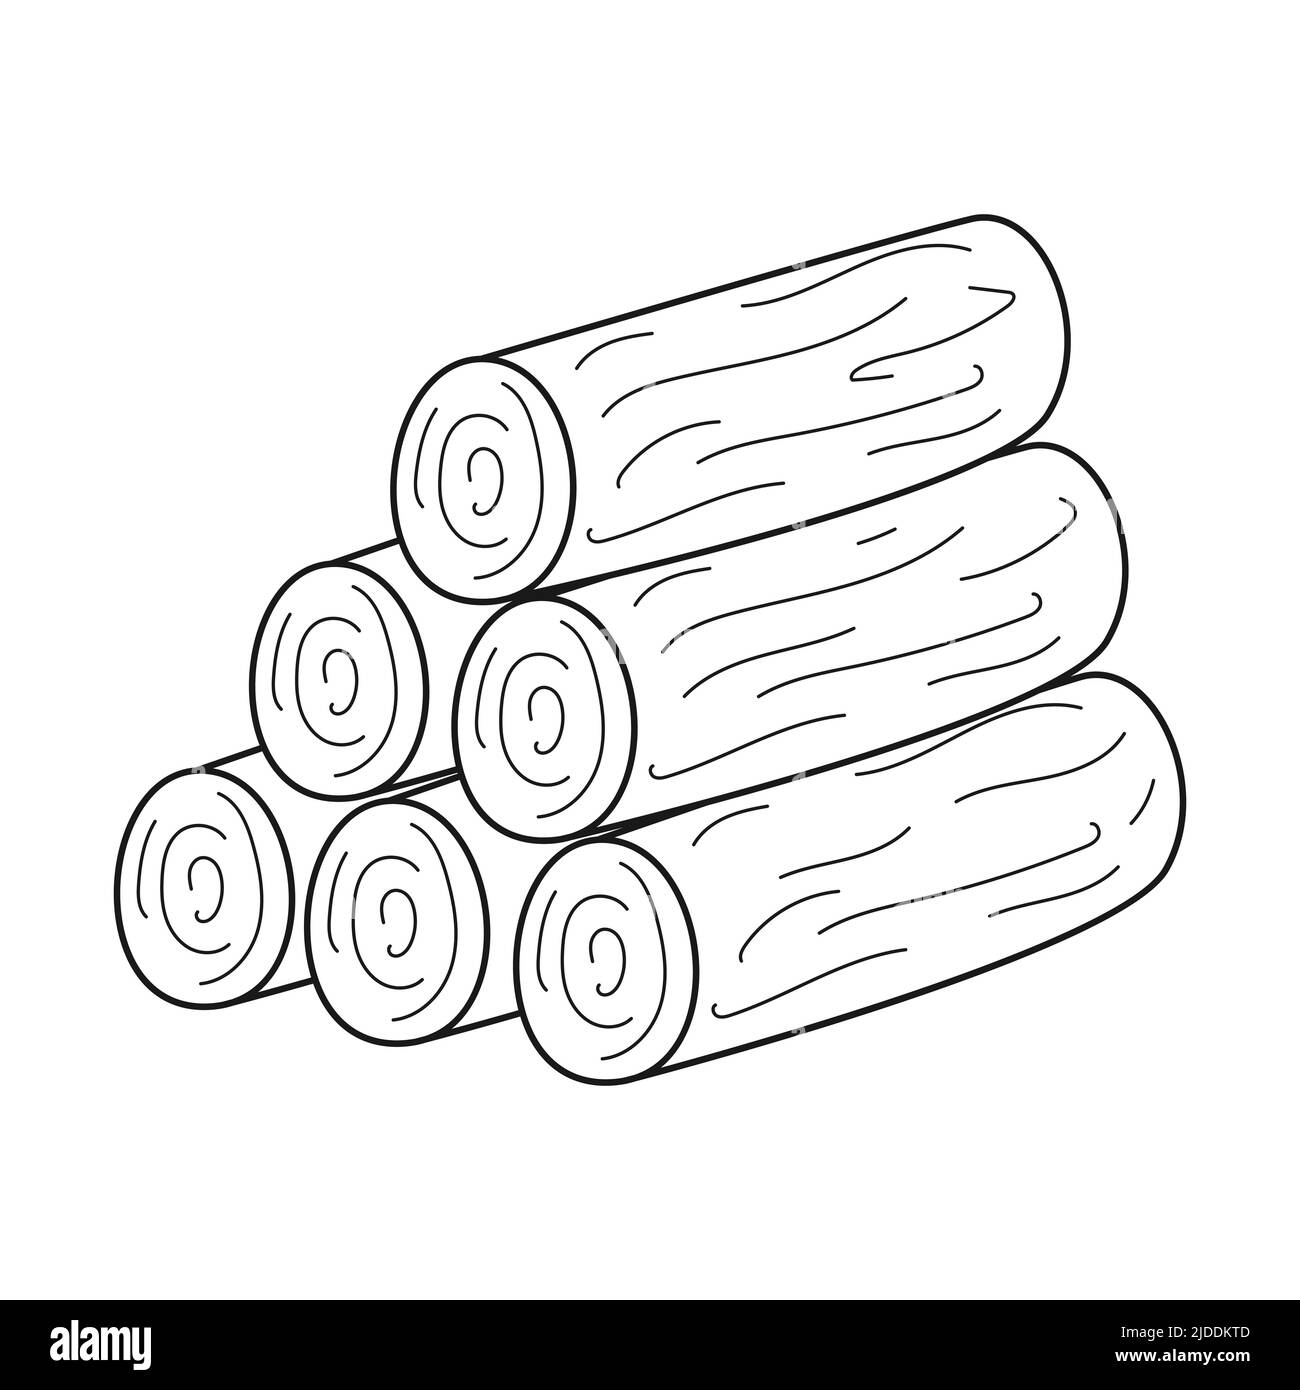 Doodle Einen Stapel Brennholz, einen Holzstapel für die Herstellung eines Feuers auf einer Wanderung, Camping, Picknick oder Roadtrip. Fällte Baumstämme. Skizzieren Sie den schwarz-weißen Vektor i Stock Vektor